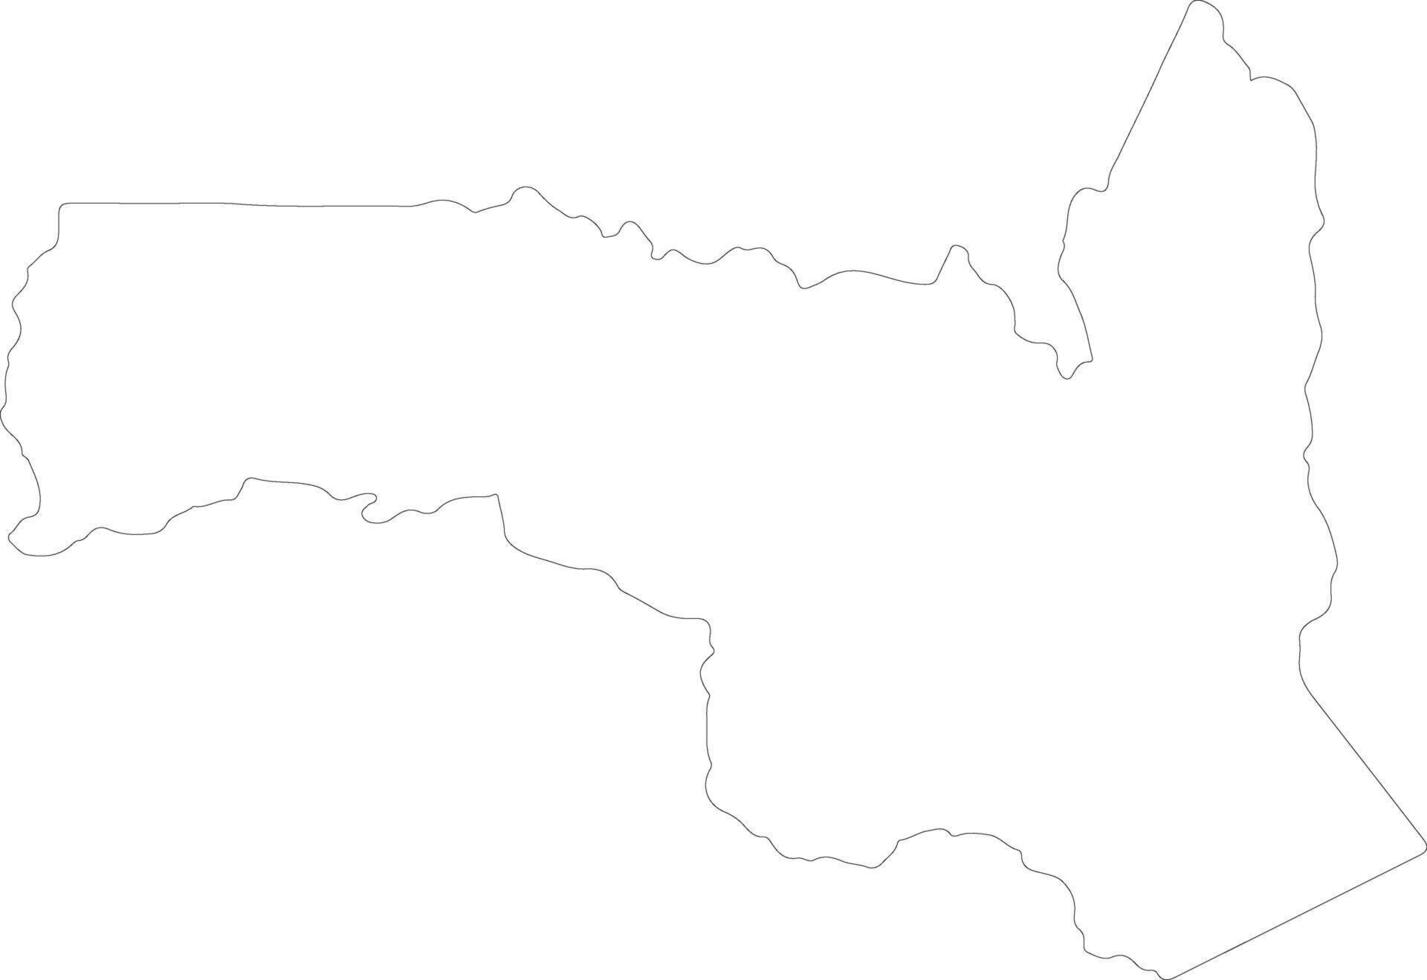 sangha republik av de kongo översikt Karta vektor